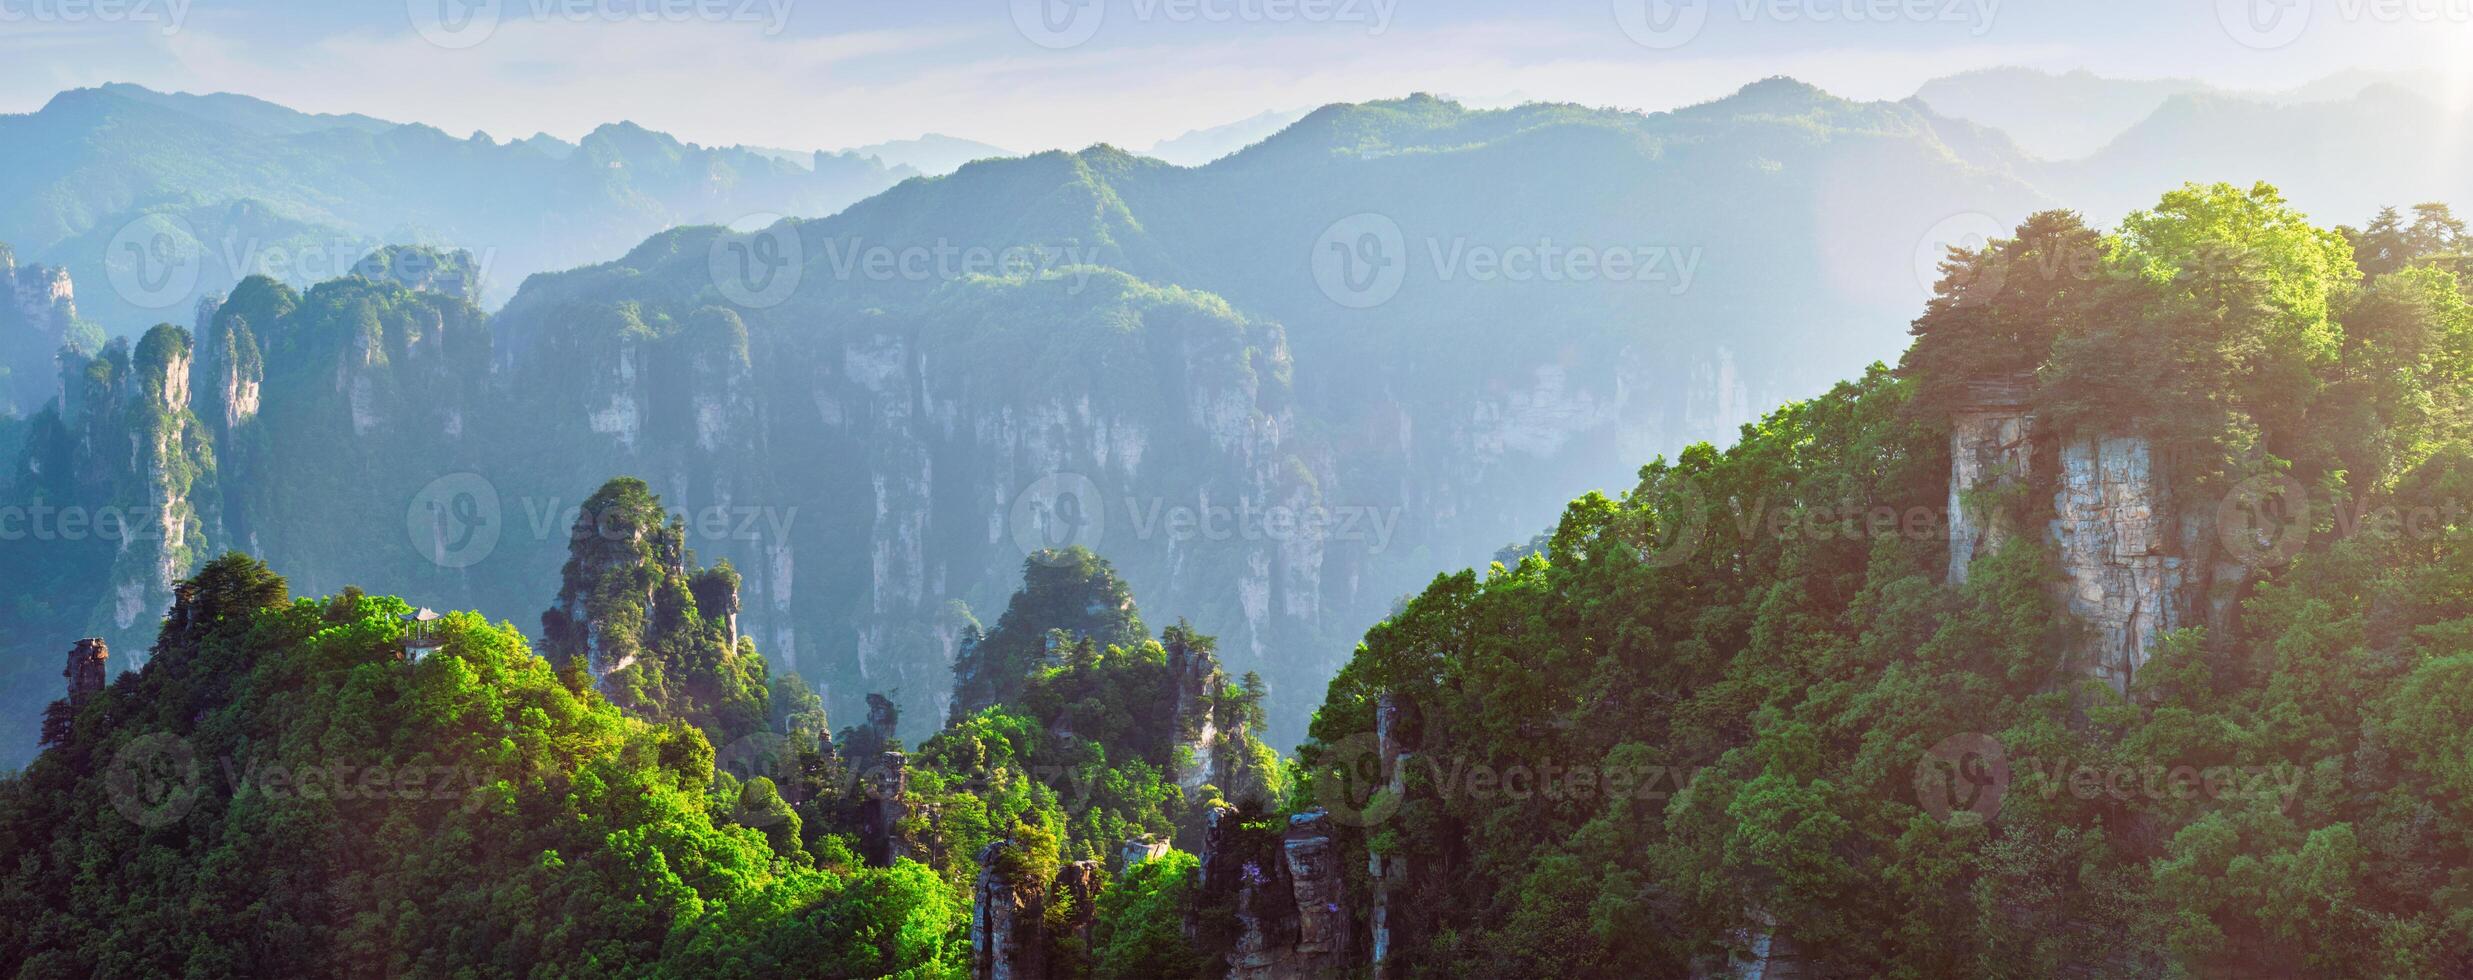 Zhangjiajie mountains, China photo